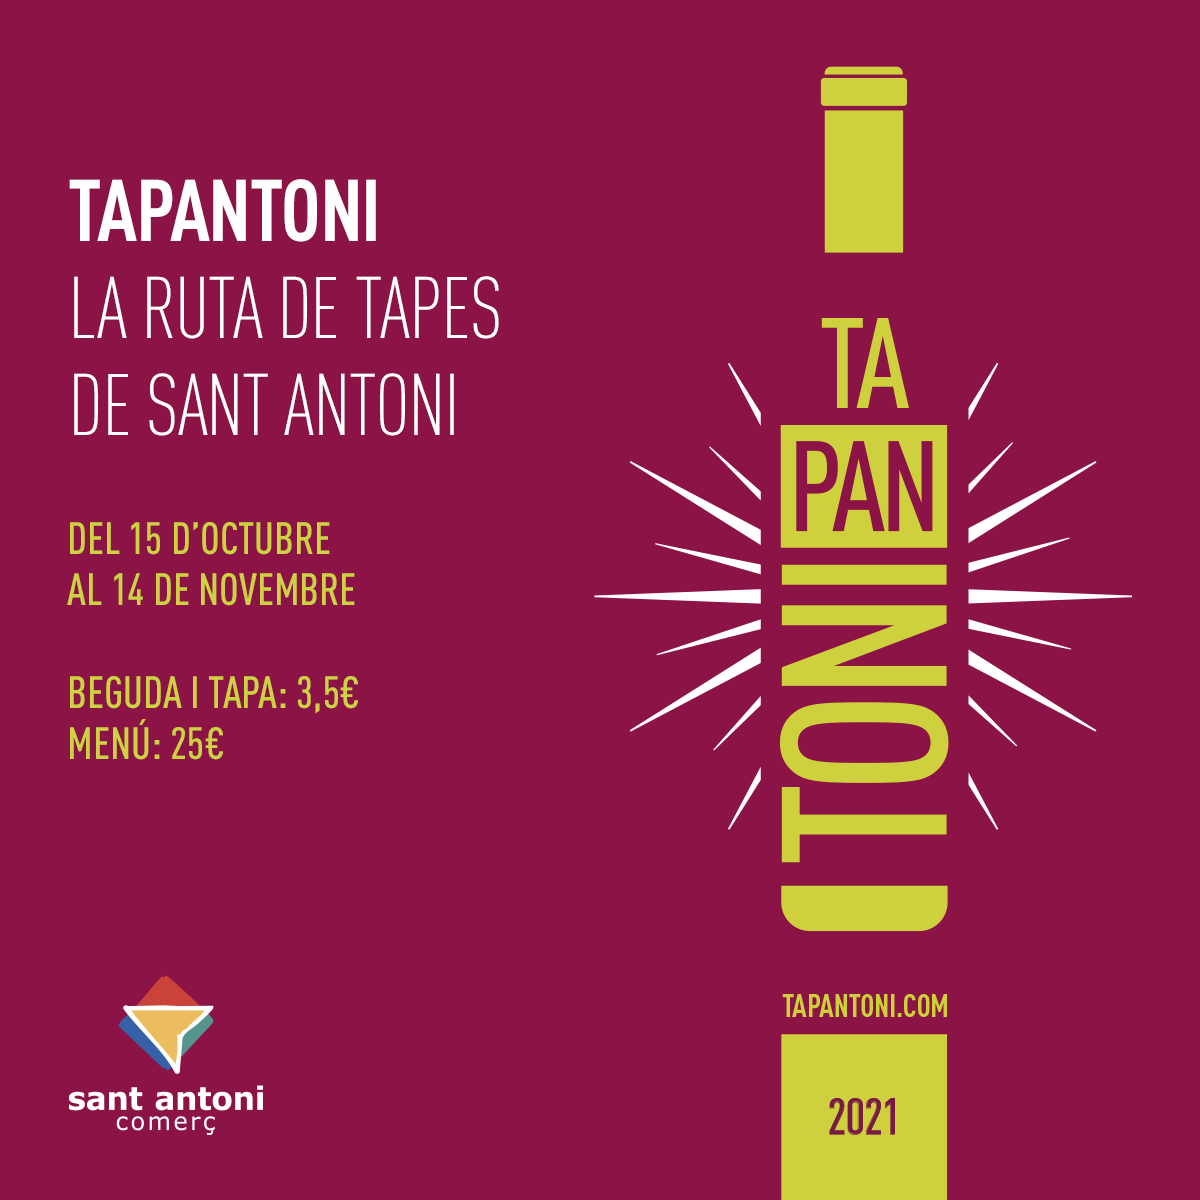 Torna el #Tapantoni amb una edició q té com a protagonista el vi de DOs catalanes, en el marc de la #Setmanadelvicatala de l' @incavicat tapantoni.com @ccamcat @eixosbcn